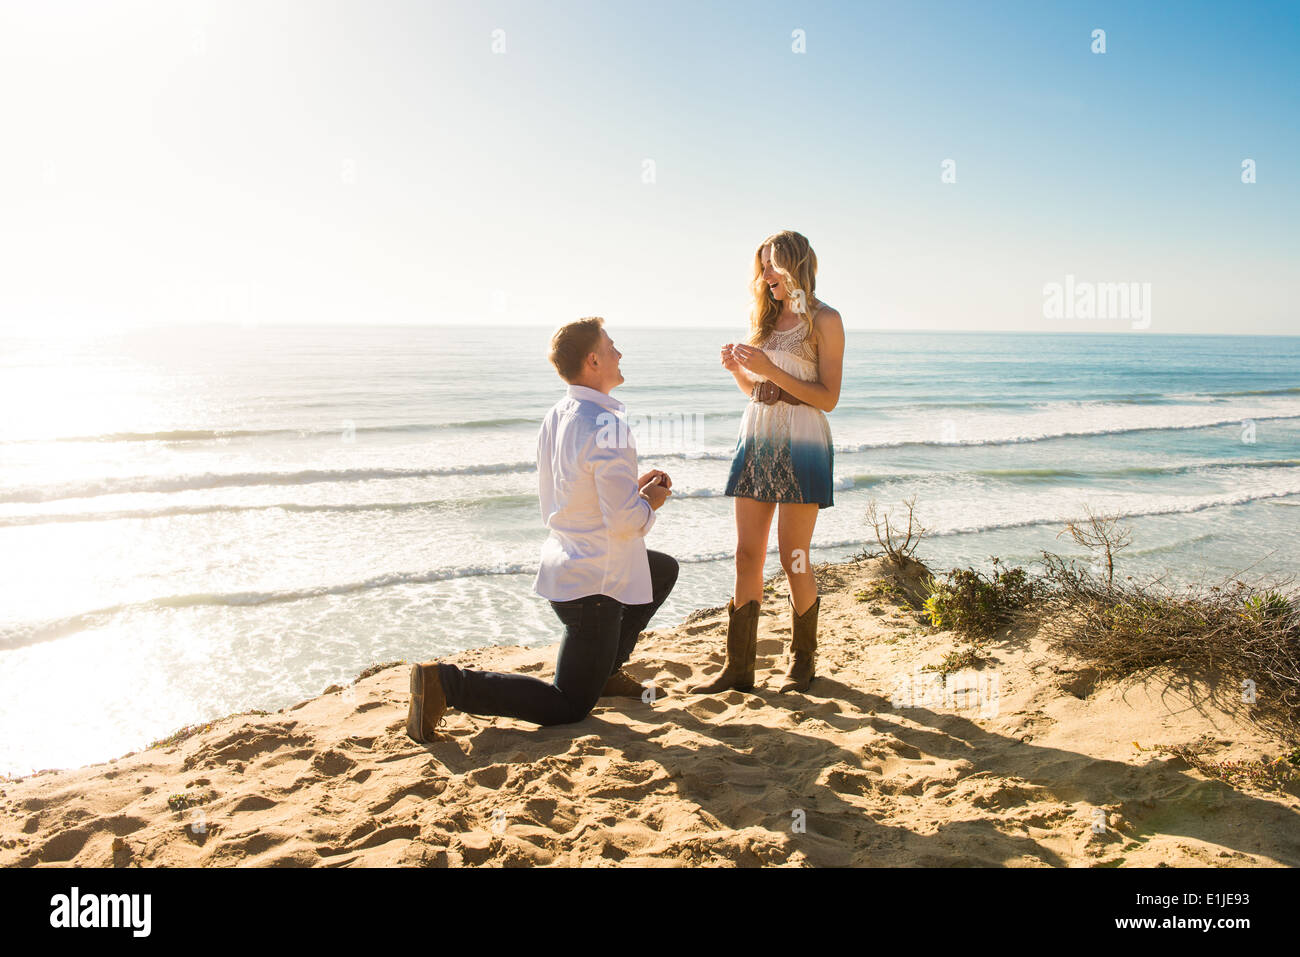 Jeune homme propose d'petite amie sur la plage, Torrey Pines, San Diego, California, USA Banque D'Images